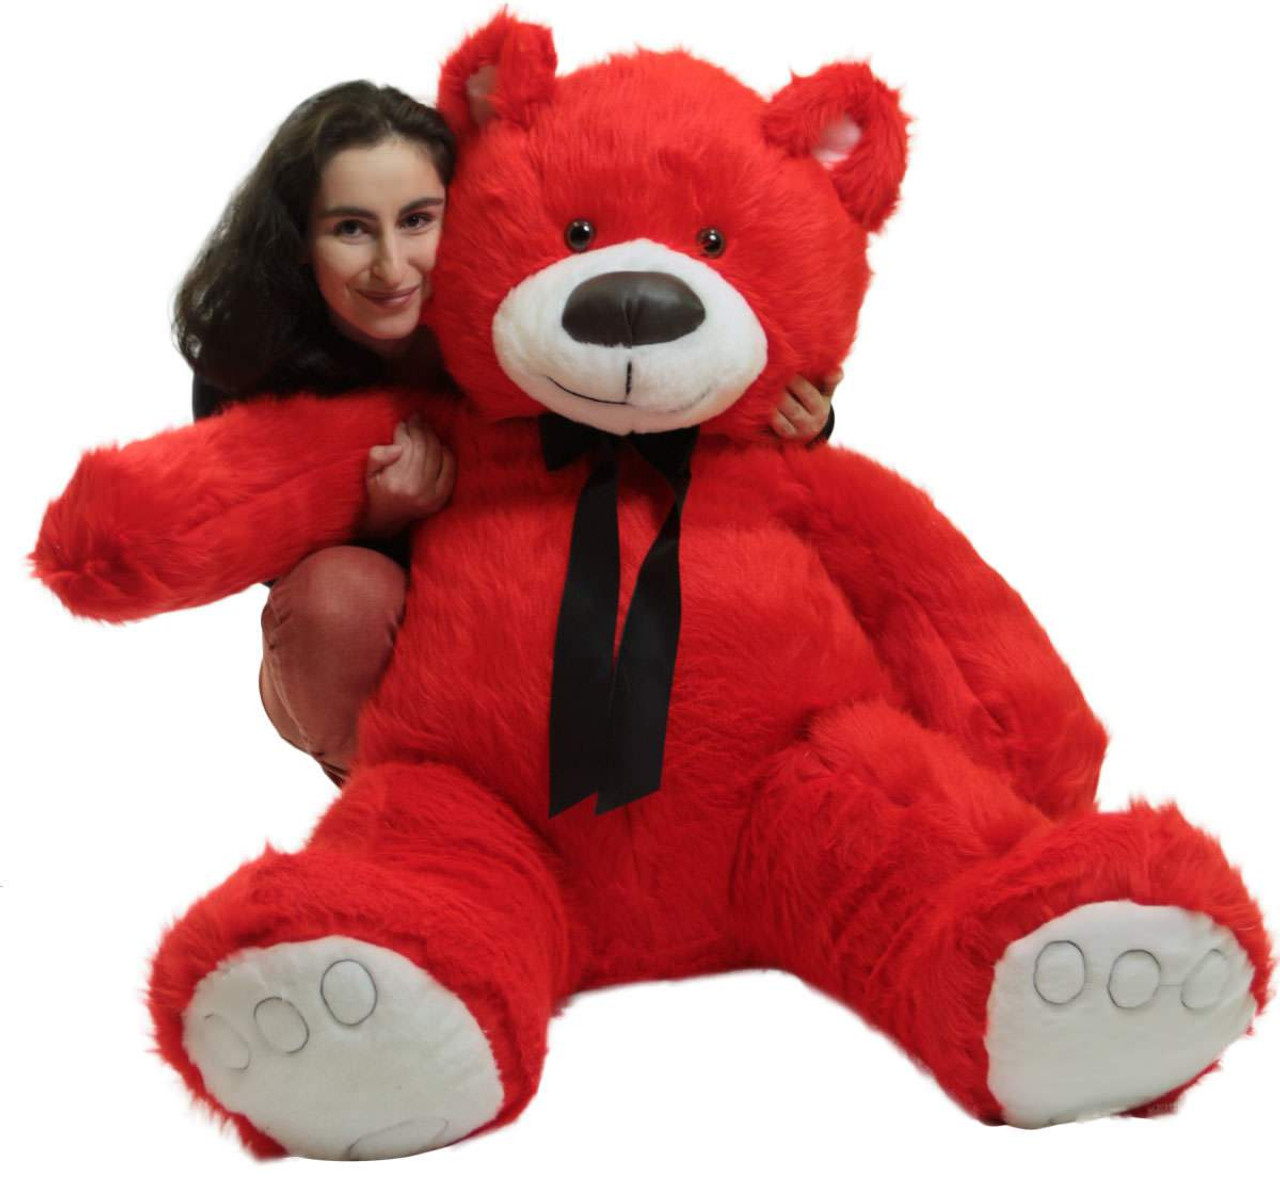 Riesiger 5 Fuß großer roter Teddybär, großes weiches Plüschtier